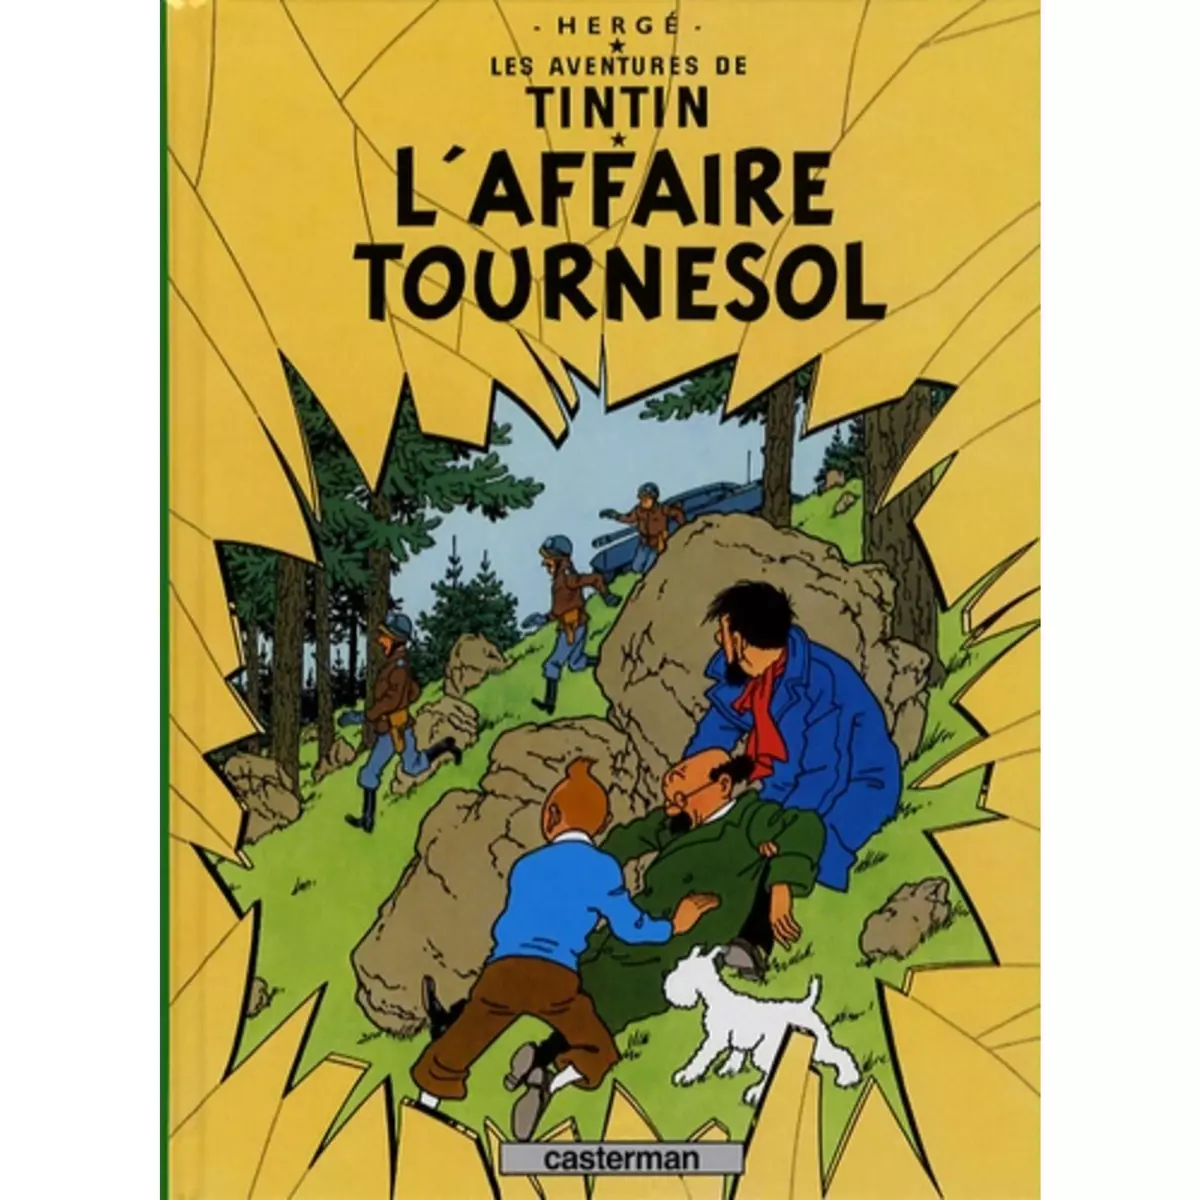  LES AVENTURES DE TINTIN TOME 18 : L'AFFAIRE TOURNESOL. MINI-ALBUM, Hergé